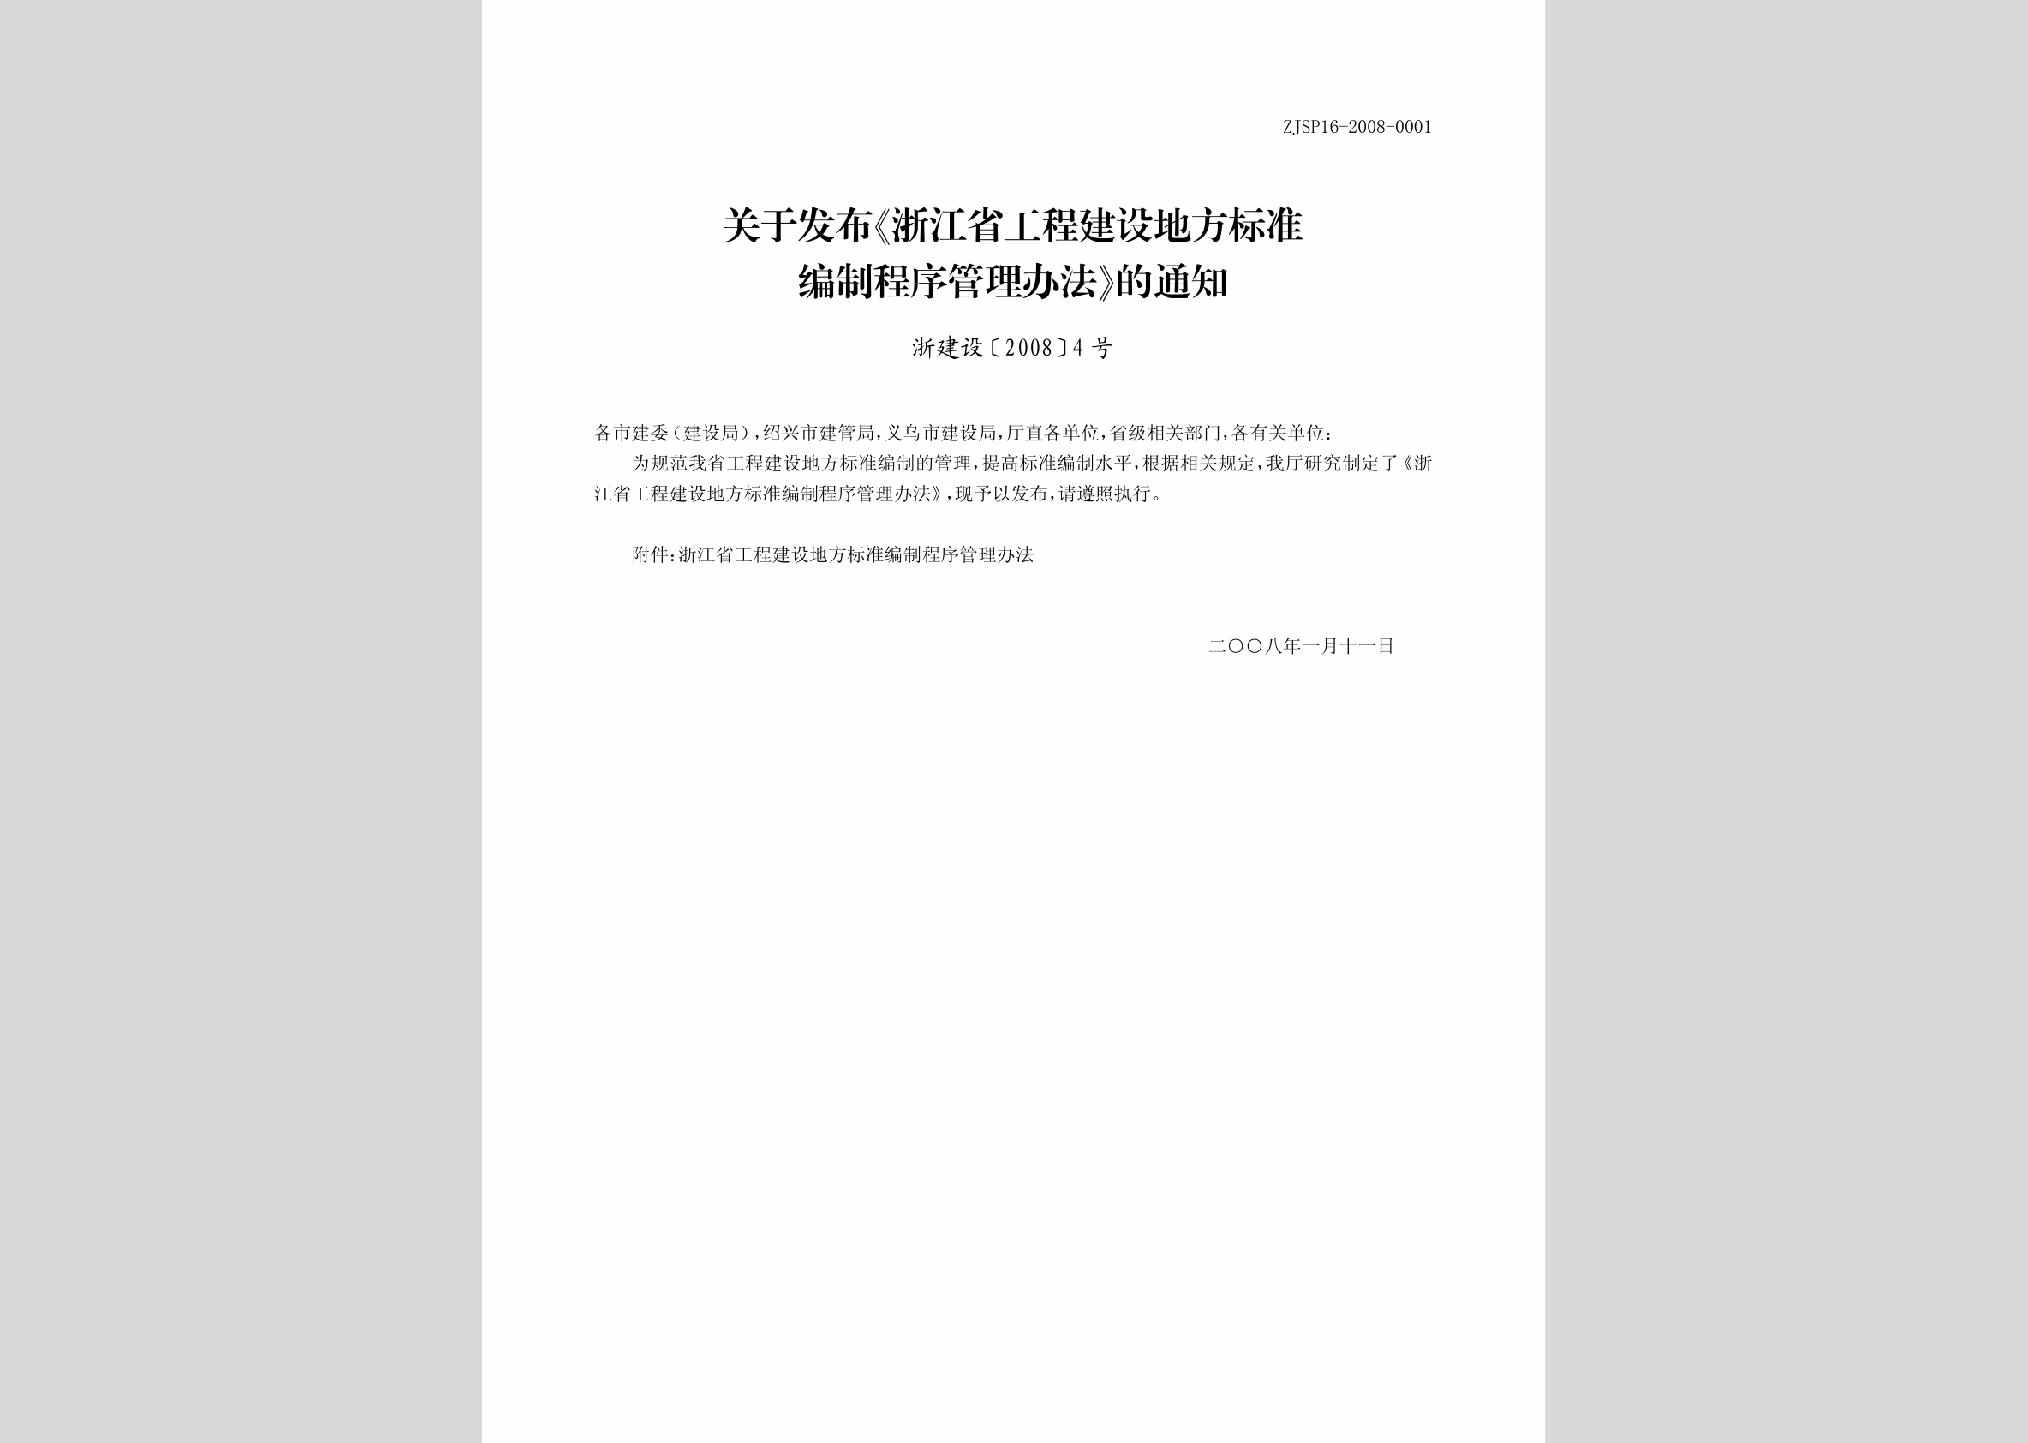 浙建设[2008]4号：关于发布《浙江省工程建设地方标准编制程序管理办法》的通知